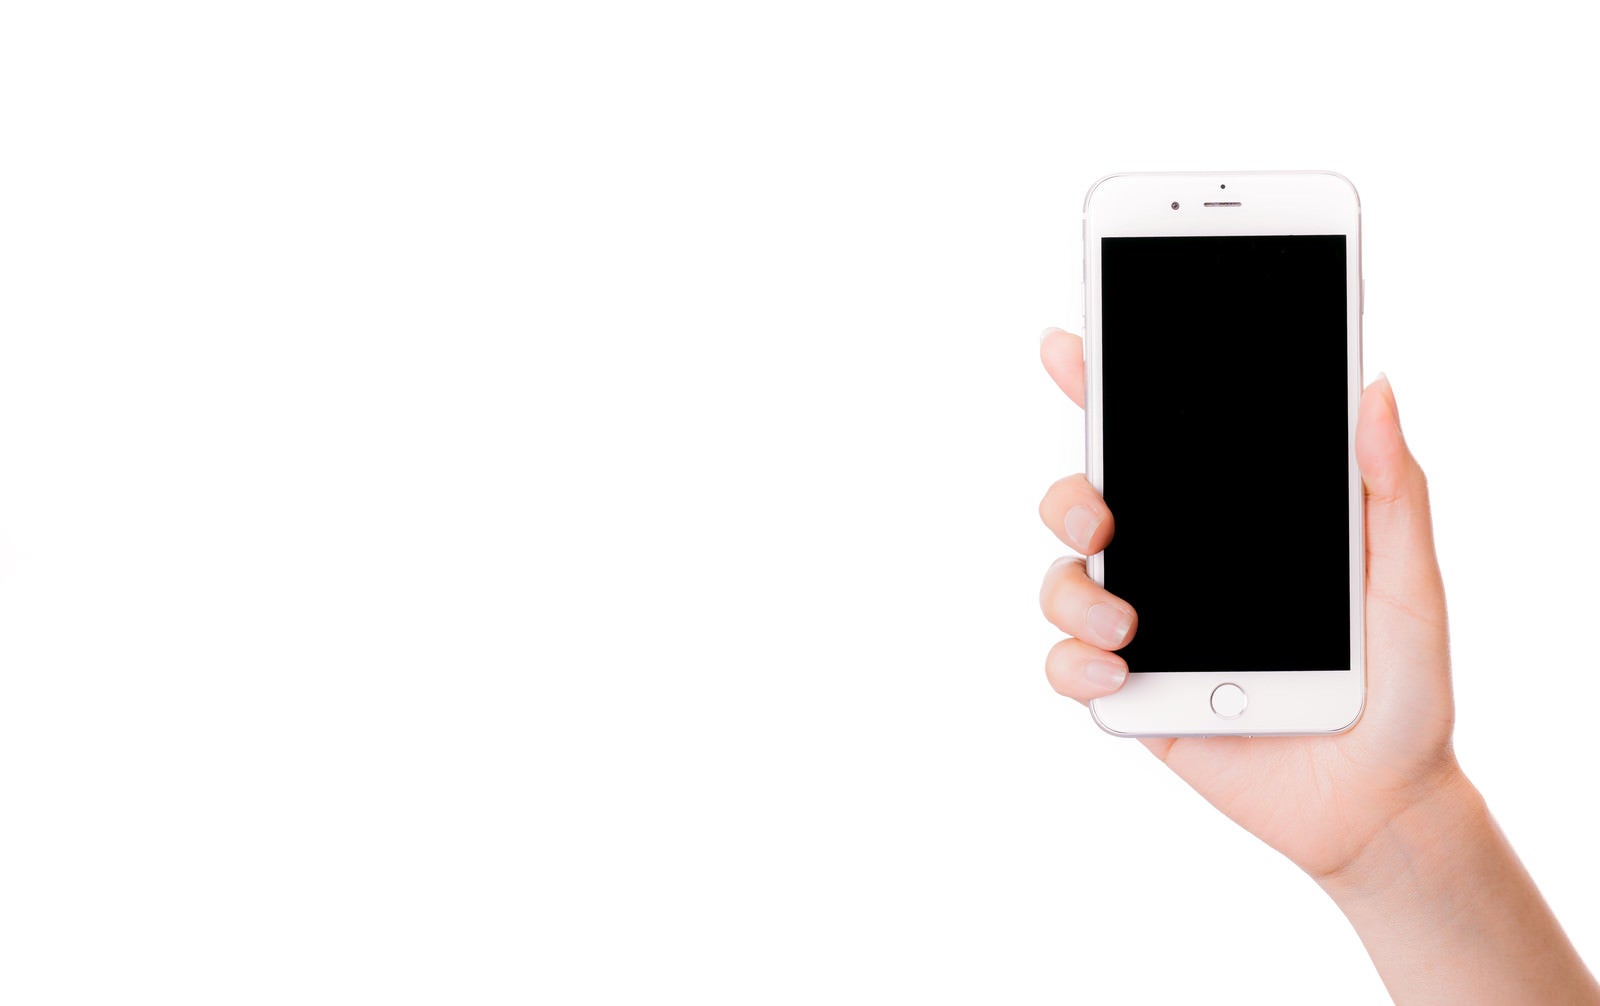 「スマートフォンを持った手と画面」の写真